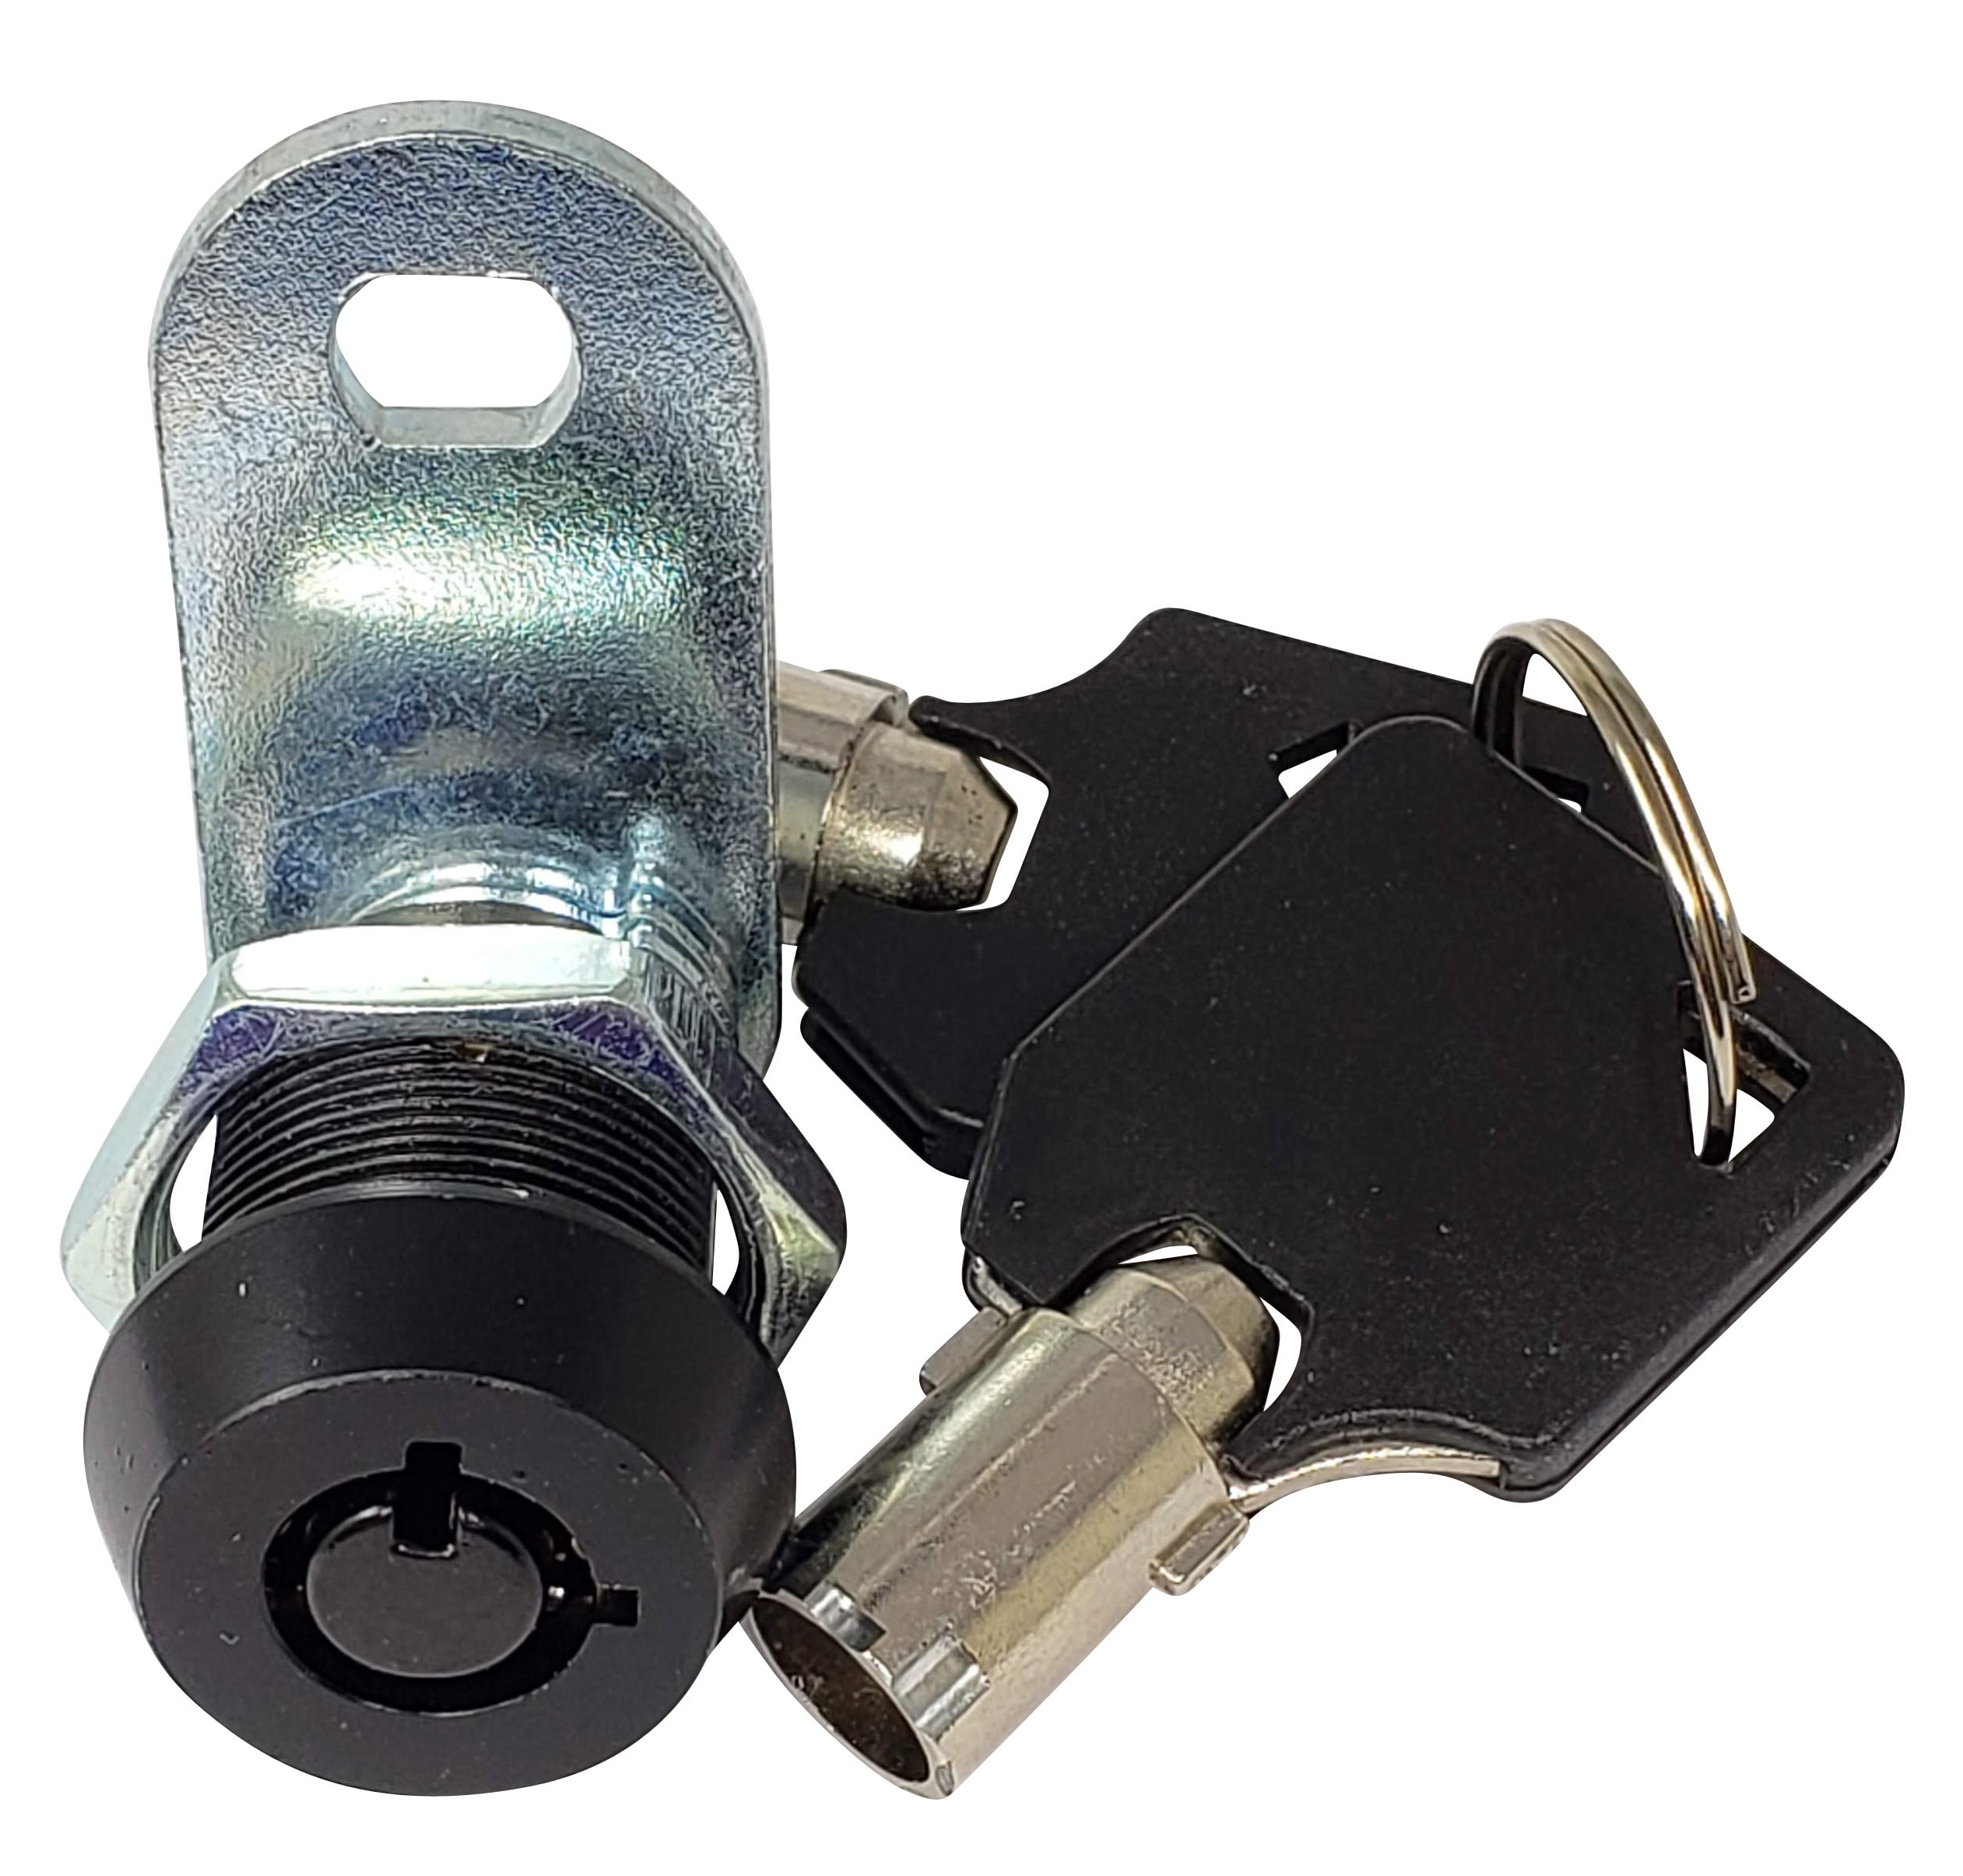 5/8" Lockcraft Cam Lock Keyed Alike #625 